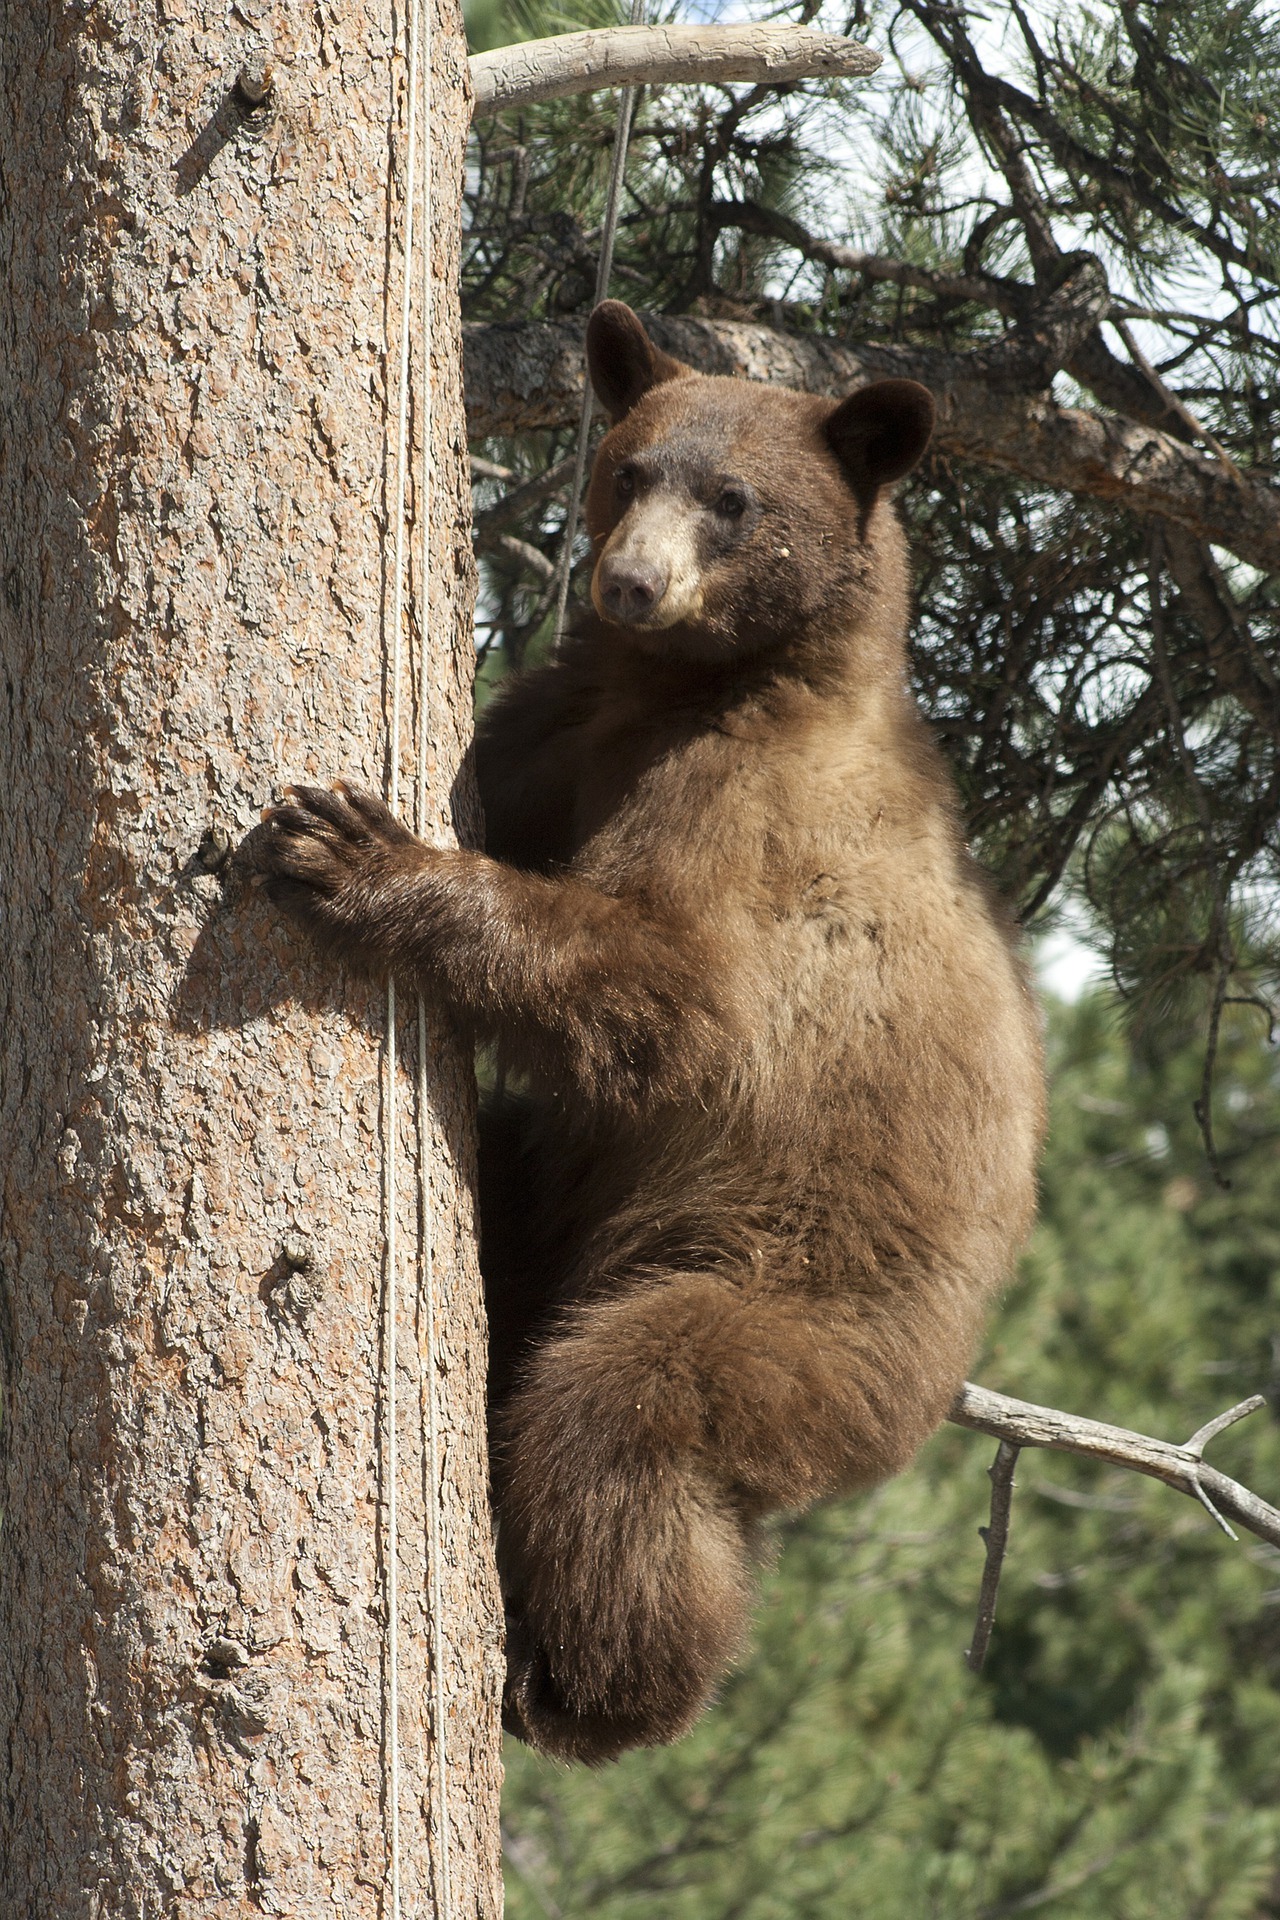 Siguen sin hallar el cuerpo del oso asesinado en Cumpas, ni a responsables de su muerte. Imagen de Suzanne deDisse en Pixabay